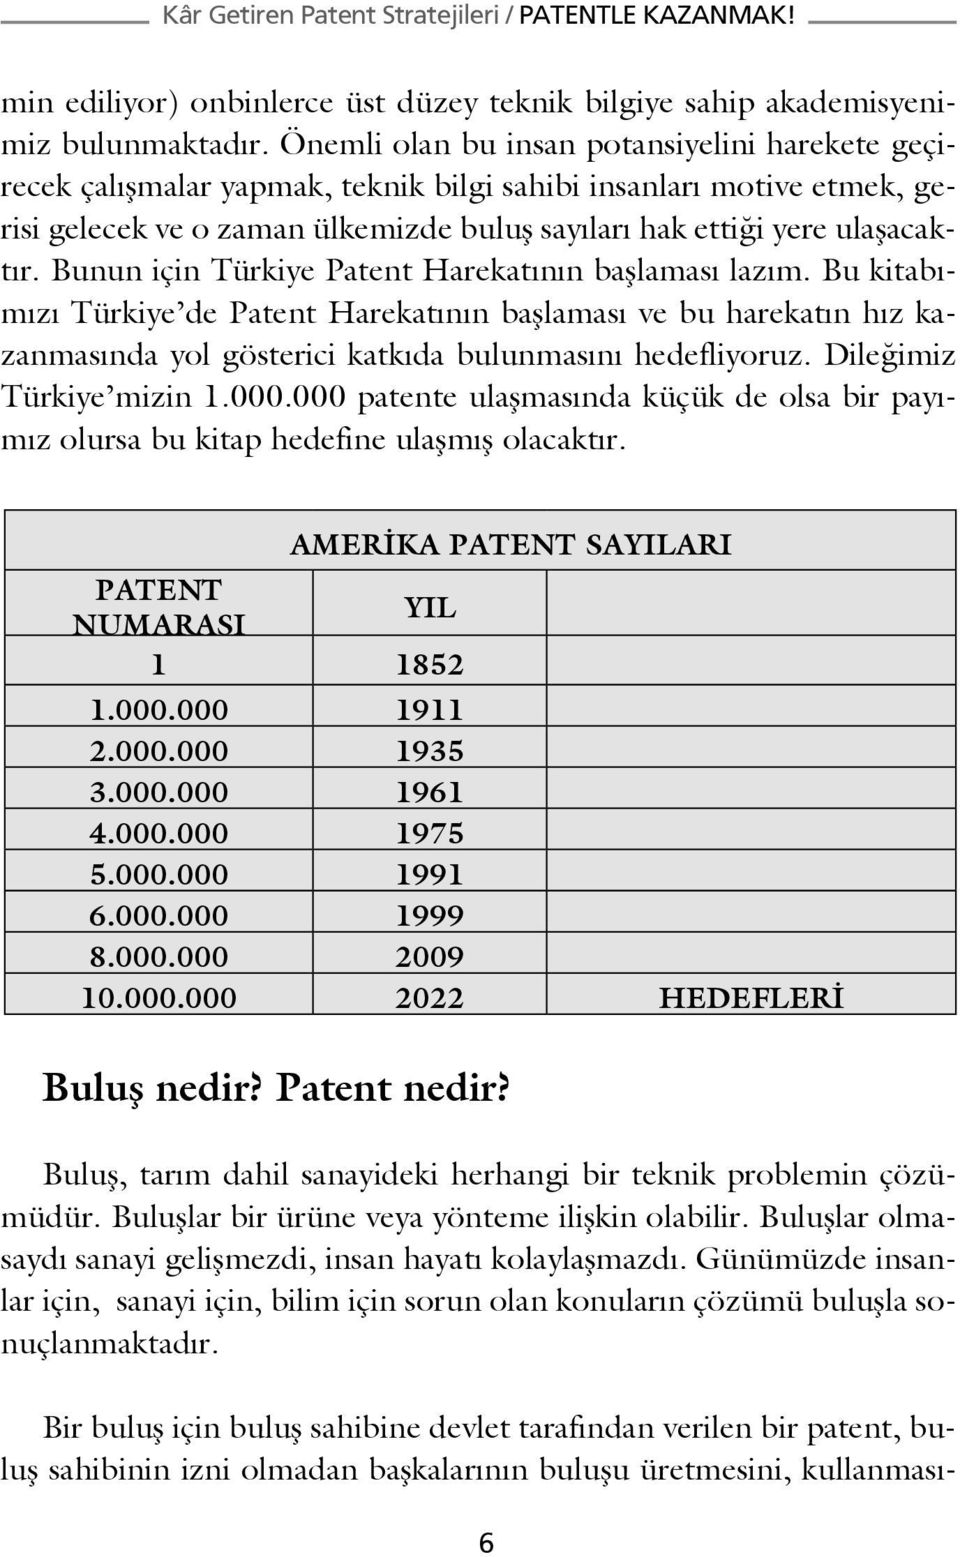 Bunun için Türkiye Patent Harekatının başlaması lazım. Bu kitabımızı Türkiye de Patent Harekatının başlaması ve bu harekatın hız kazanmasında yol gösterici katkıda bulunmasını hedefliyoruz.